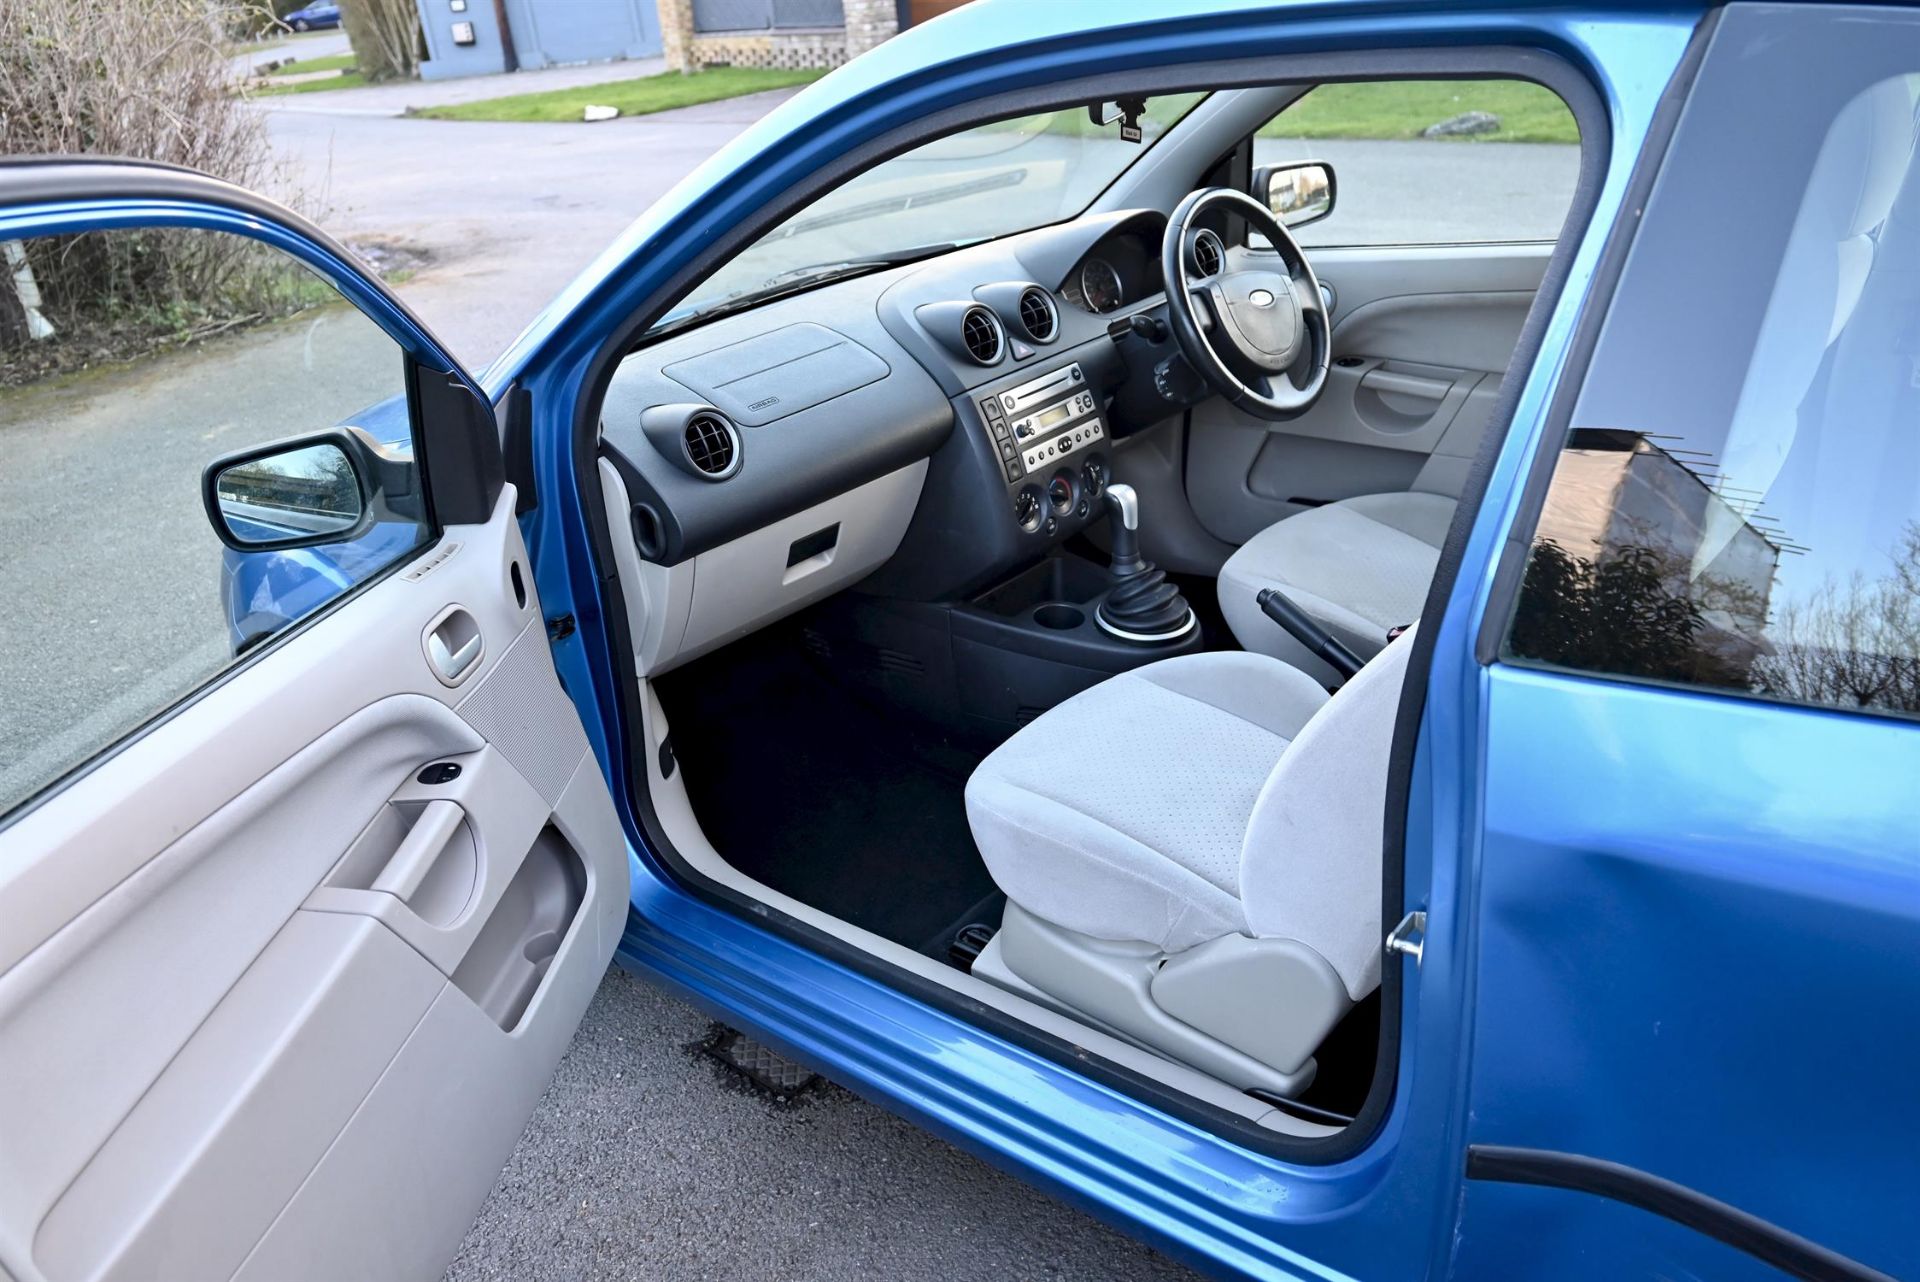 2004 Ford Fiesta 1.4 Ghia 3-door hatchback. Registration number: EO54 JNK. Metallic Aquarius Blue, - Image 2 of 16